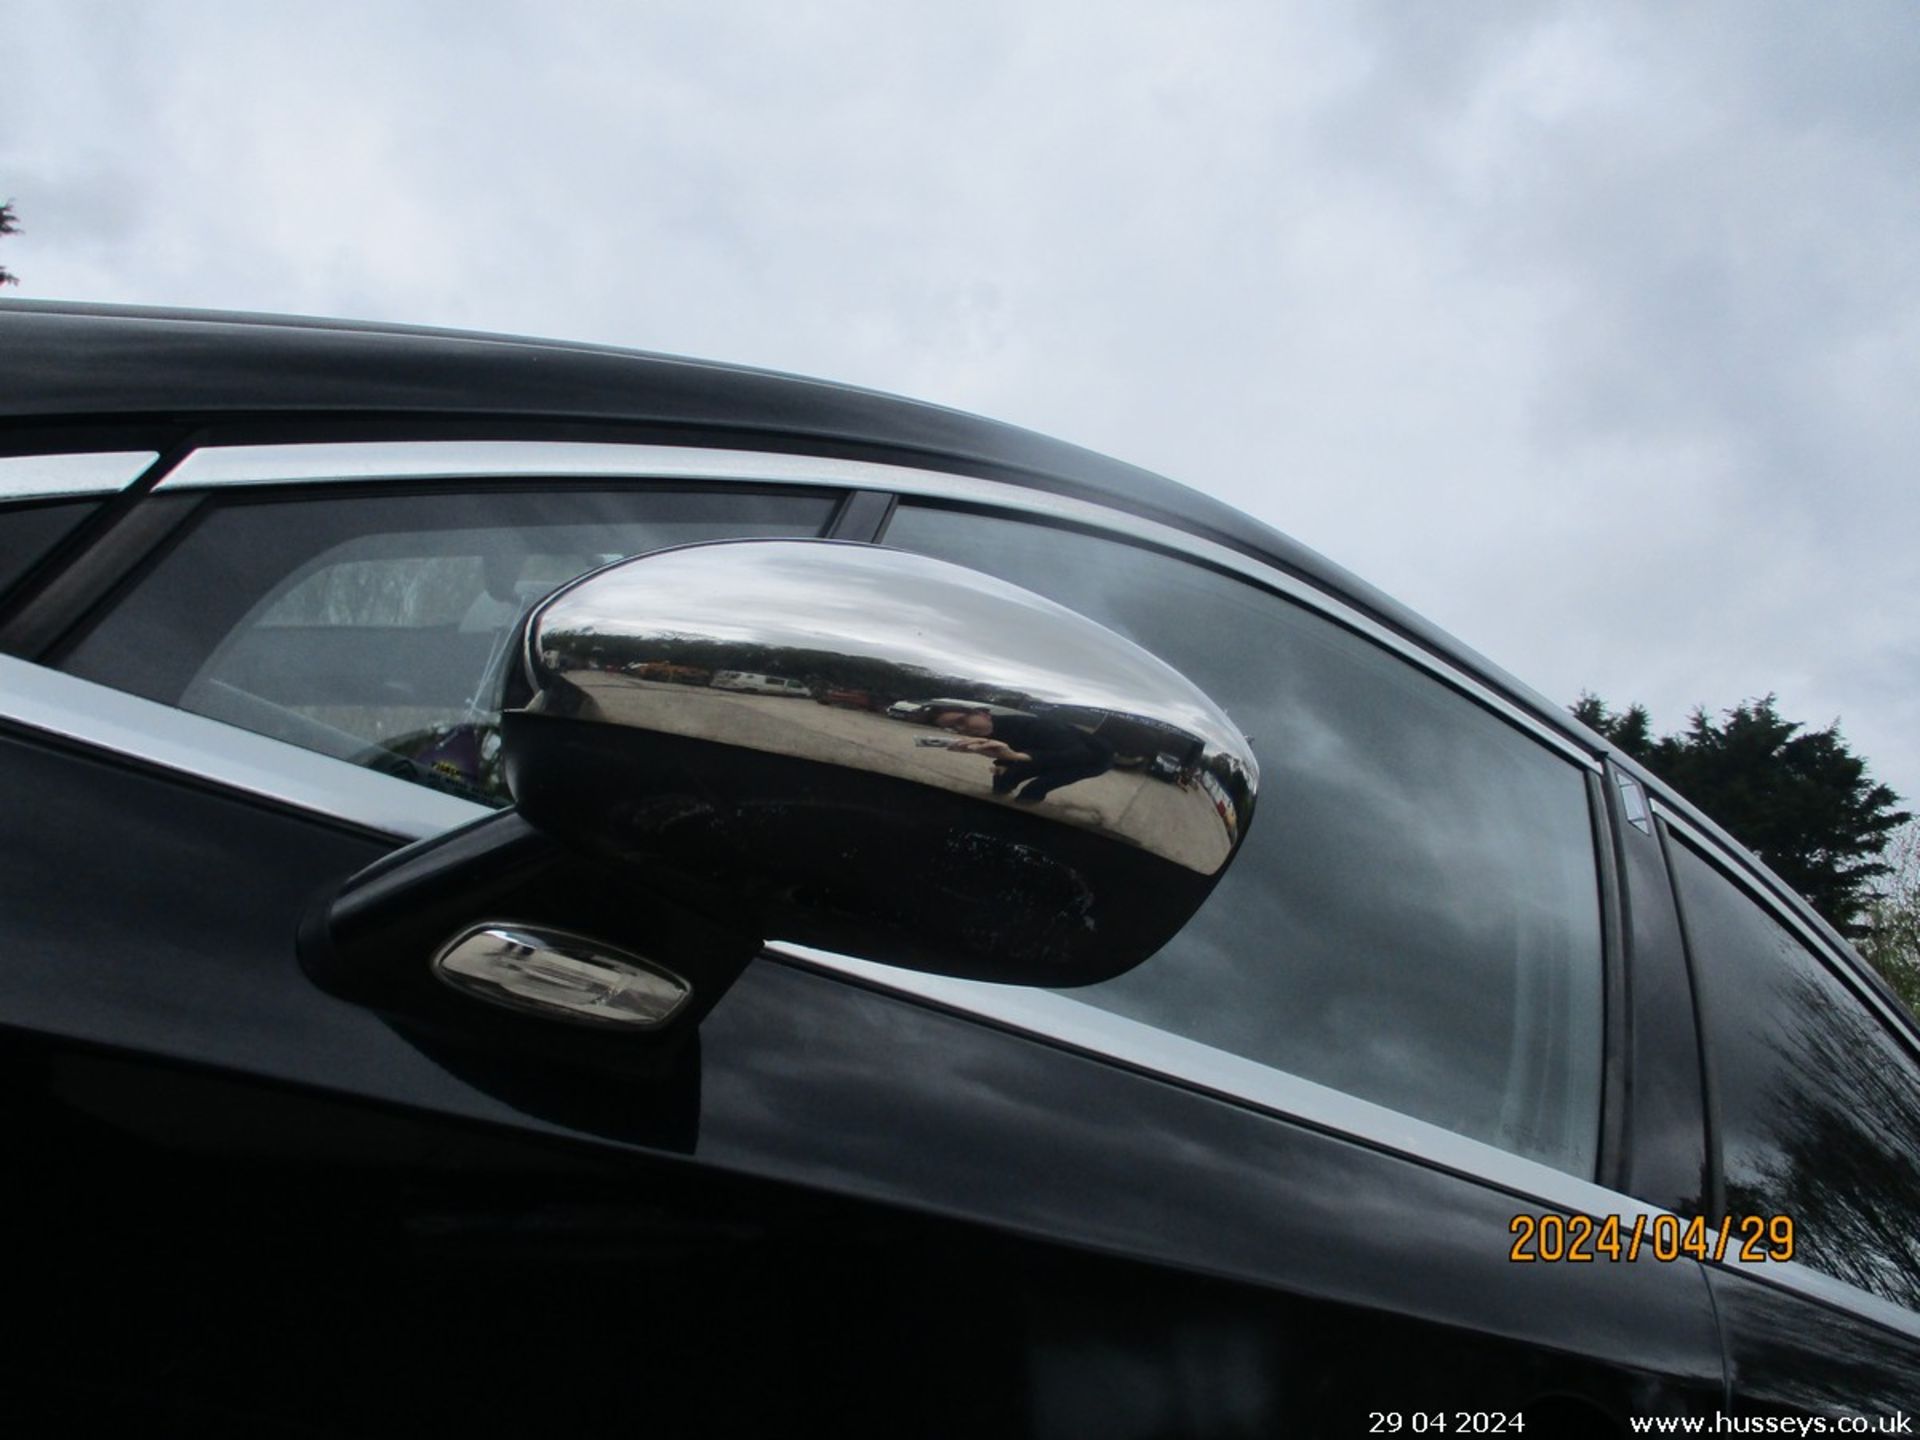 13/13 CITROEN DS4 DSIGN HDI - 1560cc 5dr Hatchback (Black, 135k) - Image 20 of 29